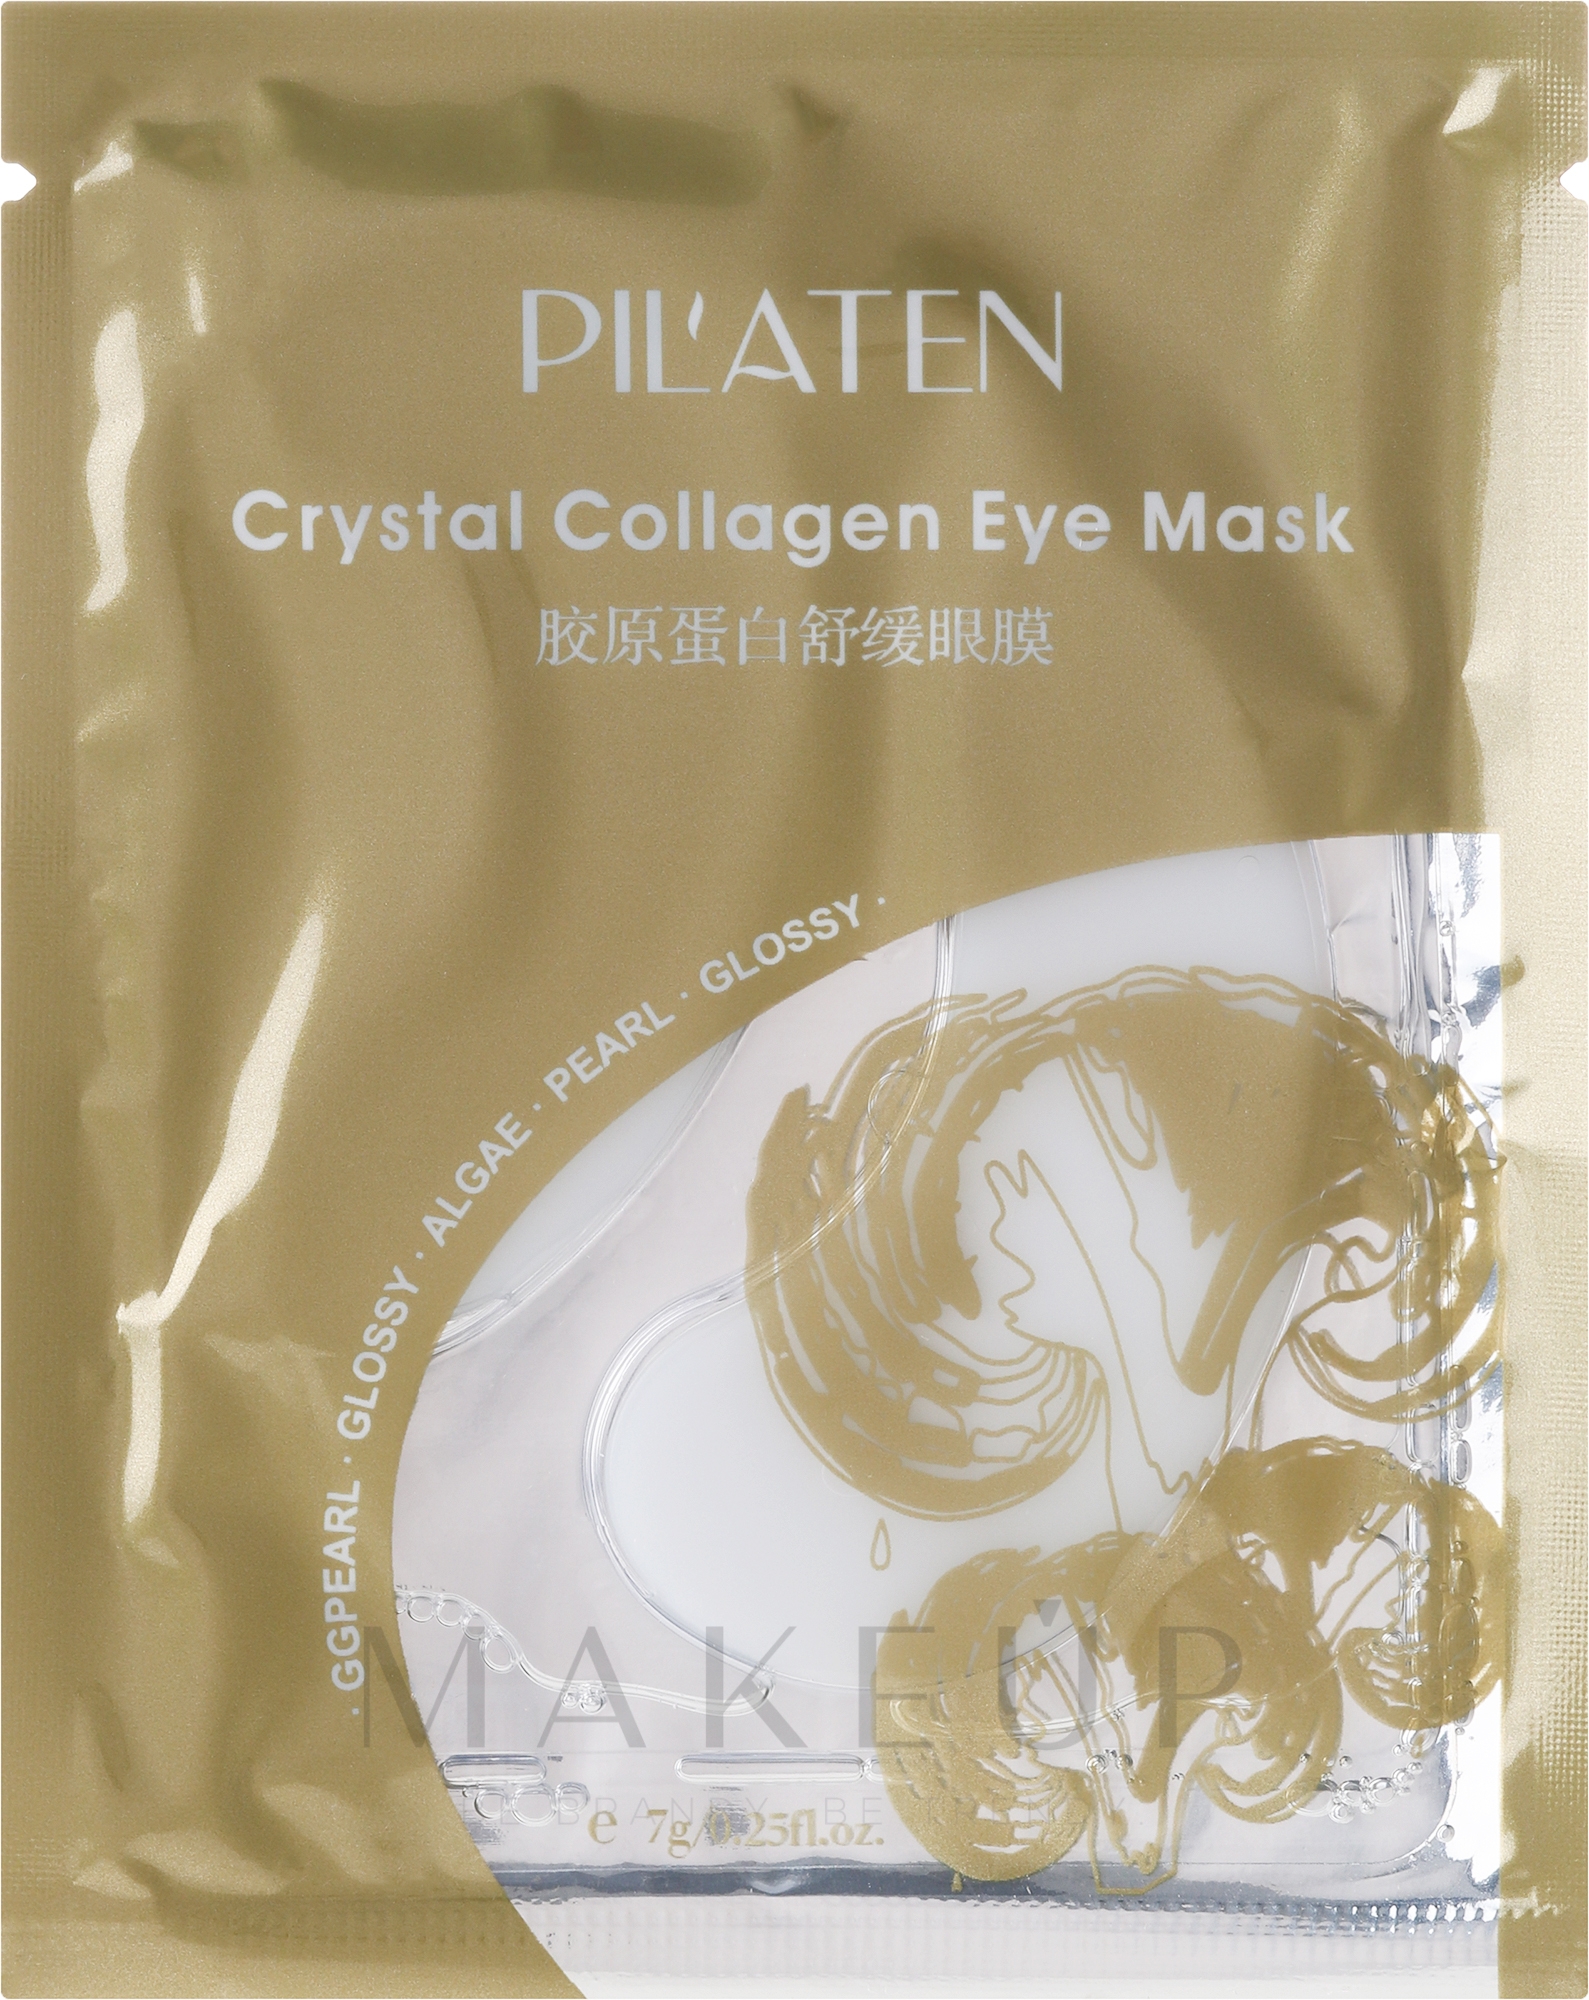 Algenmaske für die Augenpartie mit Kollagen - Pil'aten Crystal Collagen Eye Mask — Foto 7 g